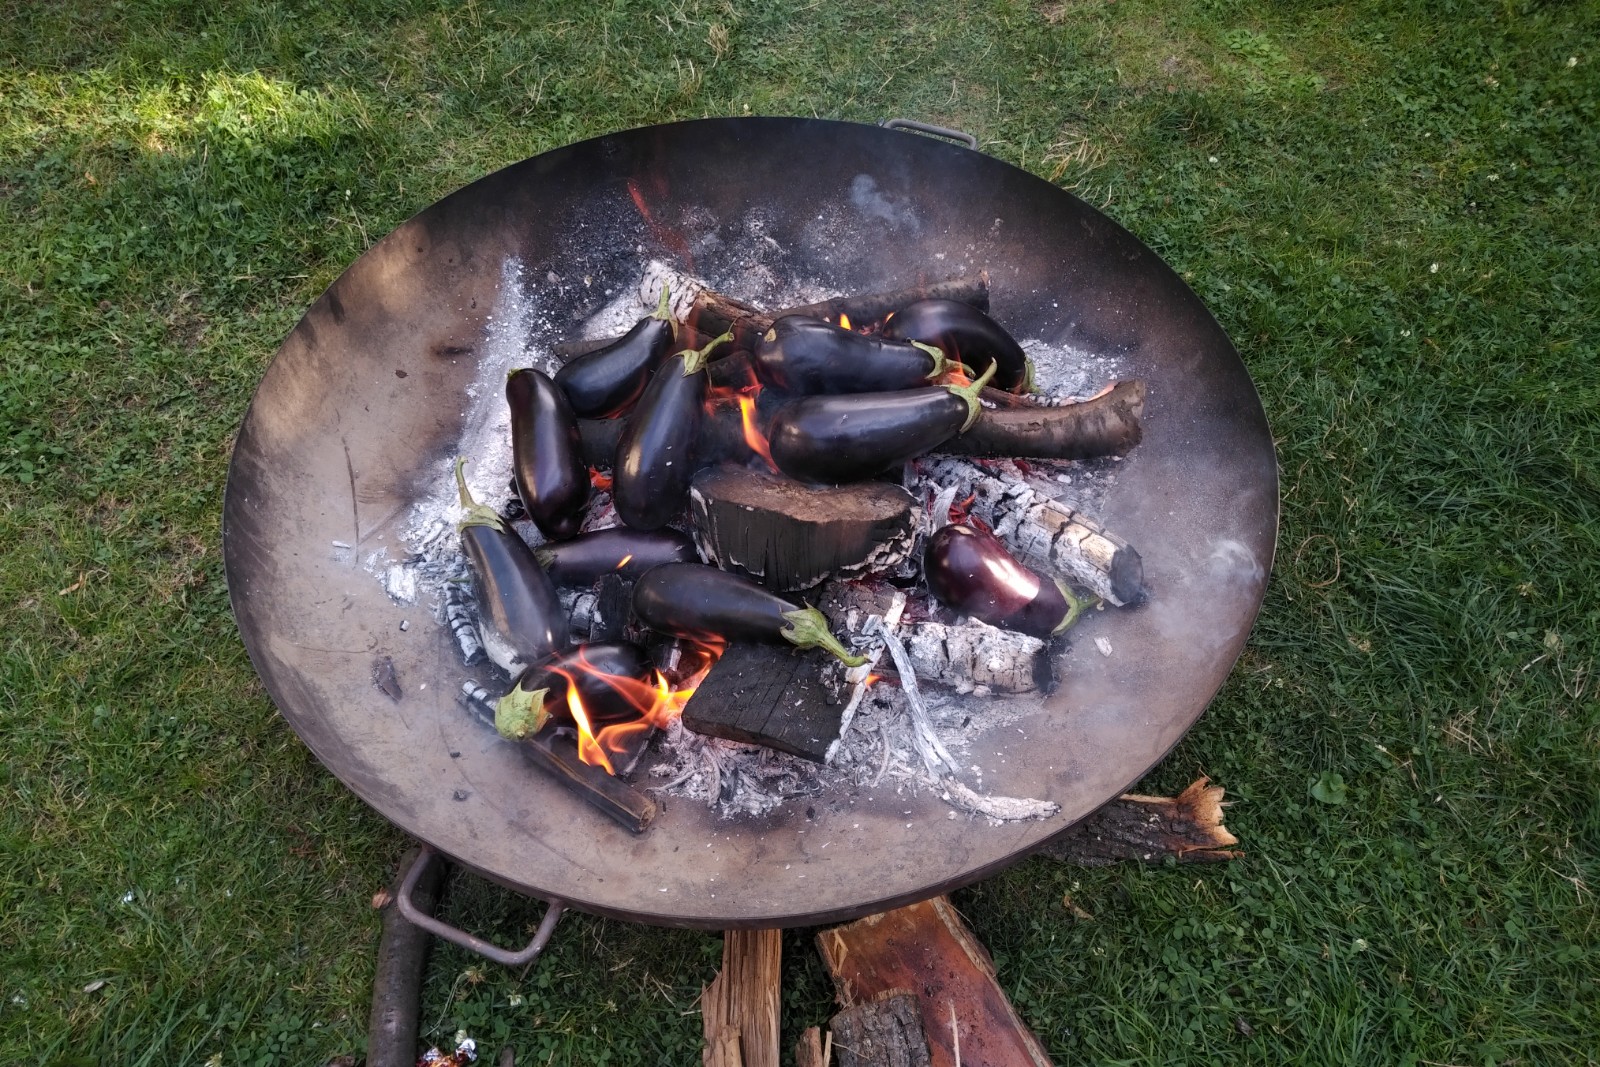 Bakłażany pieczone w ogniu